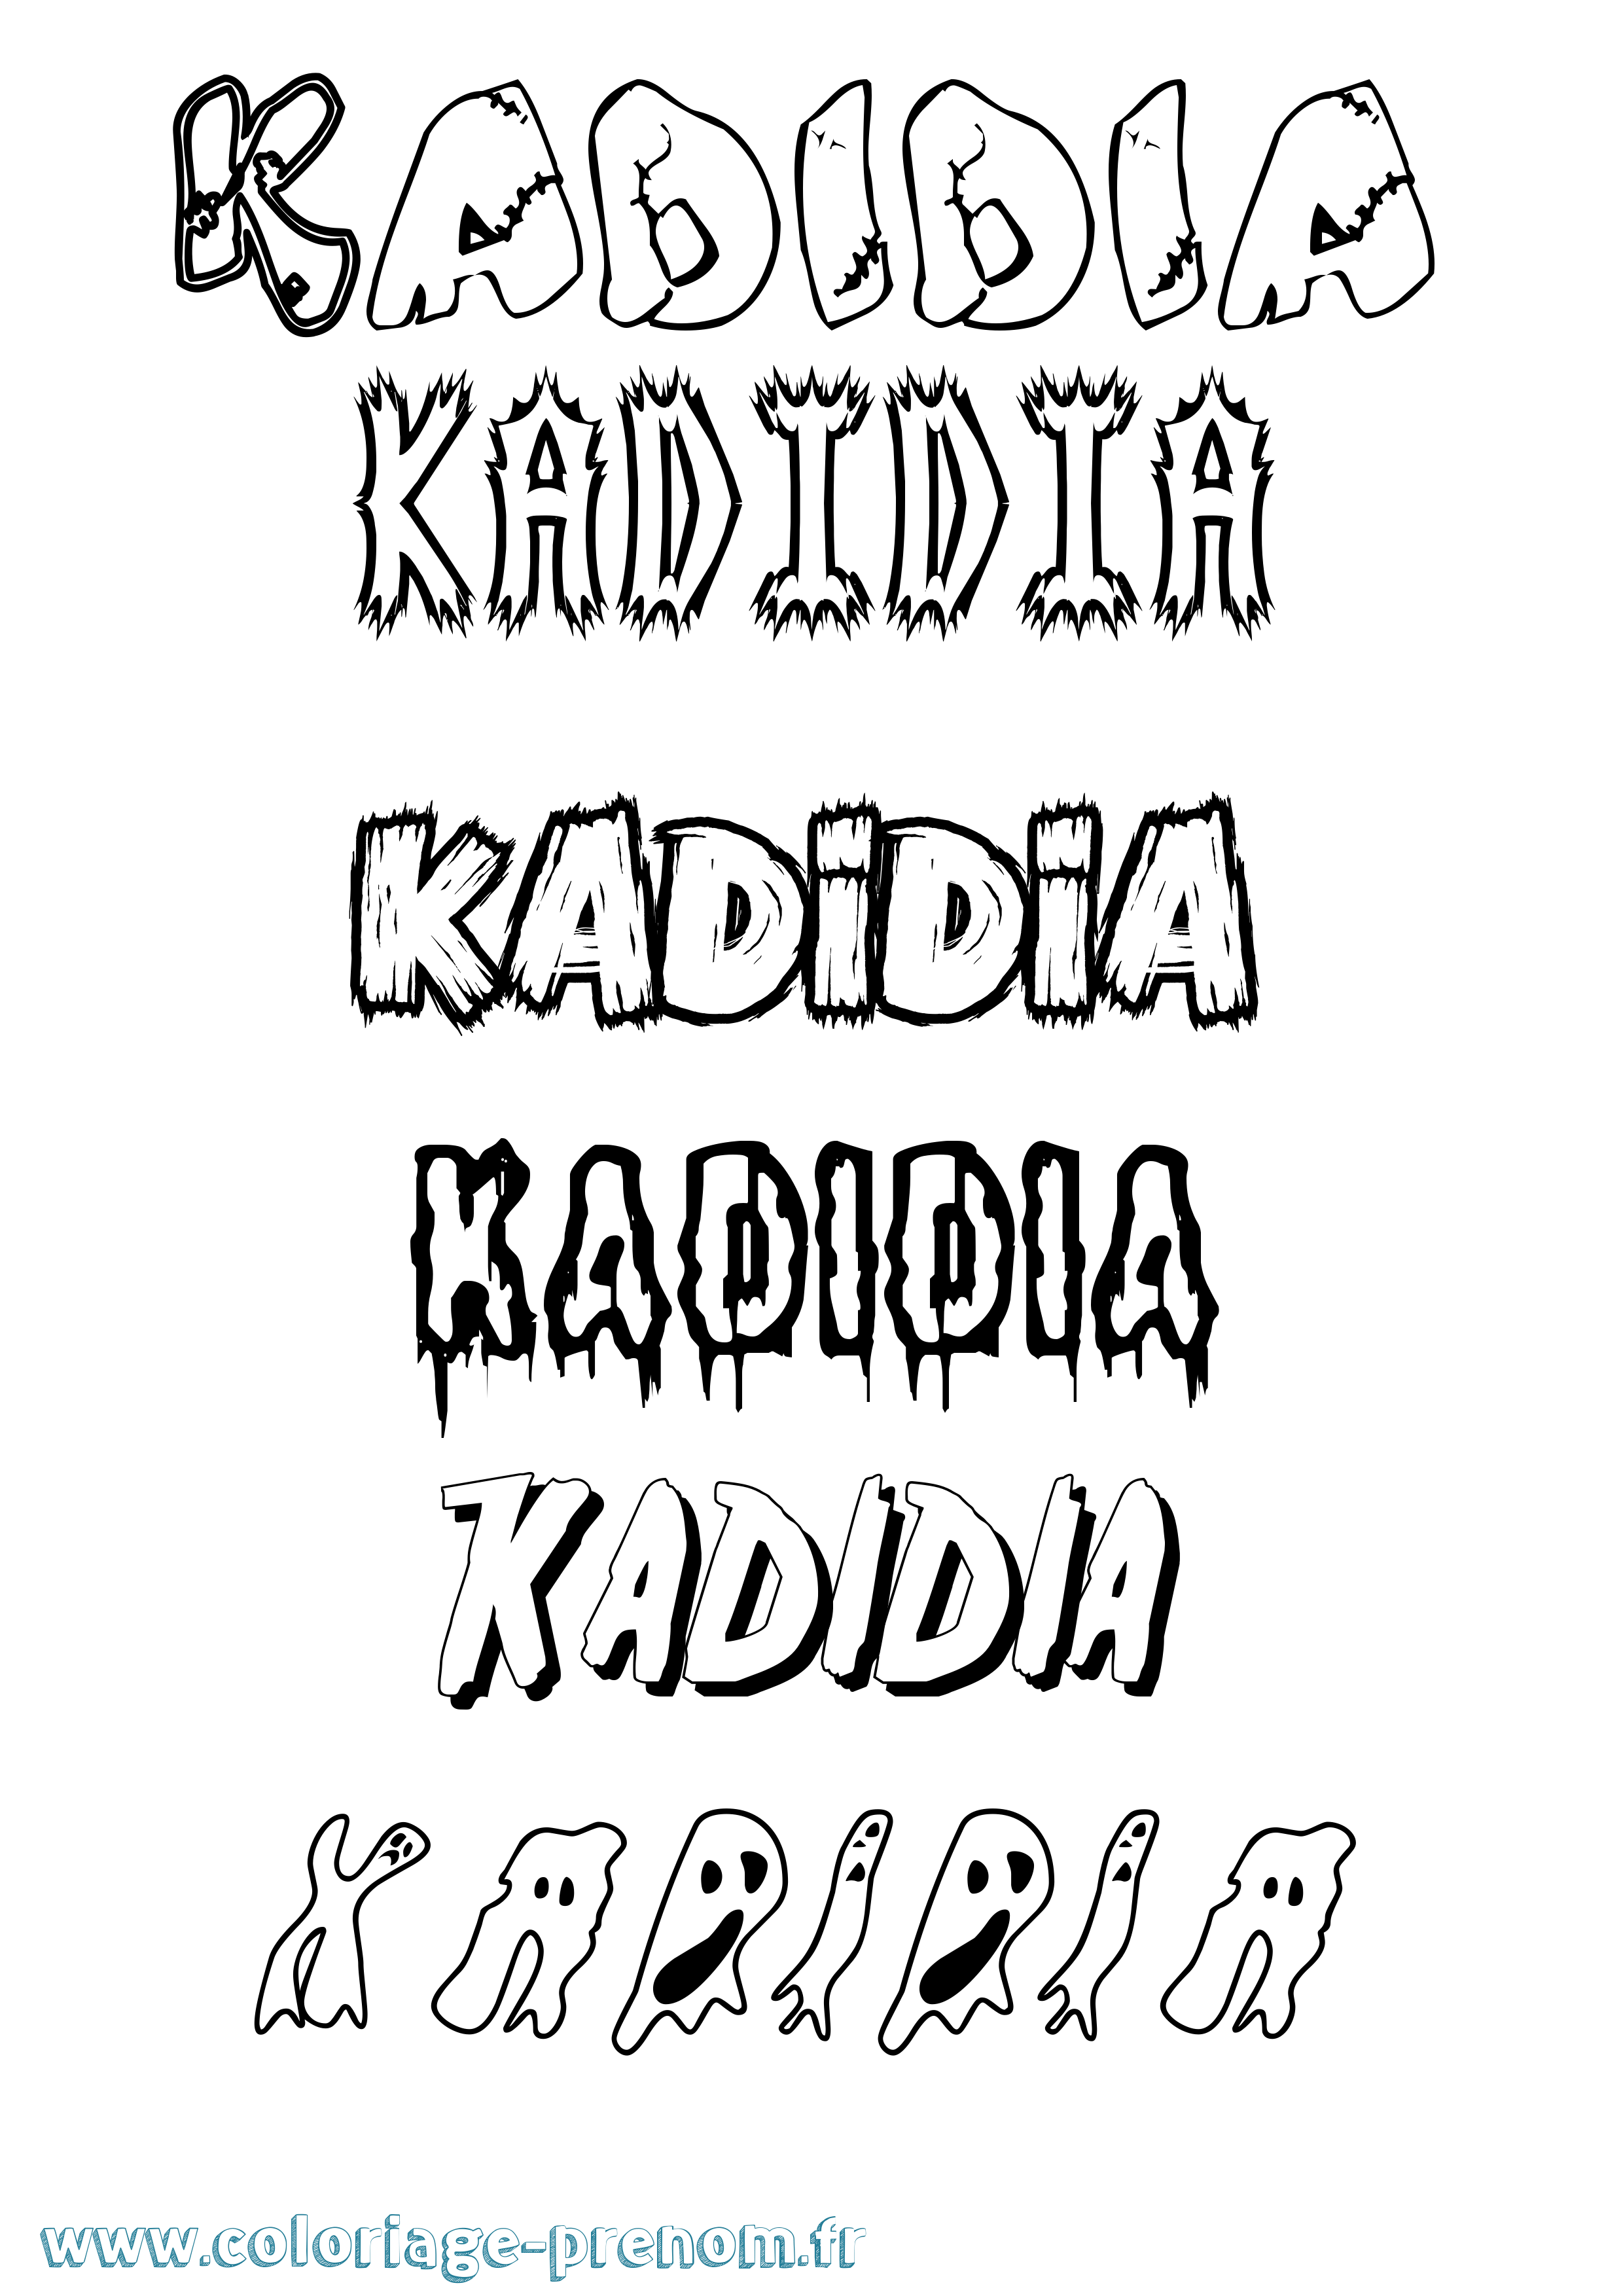 Coloriage prénom Kadidia